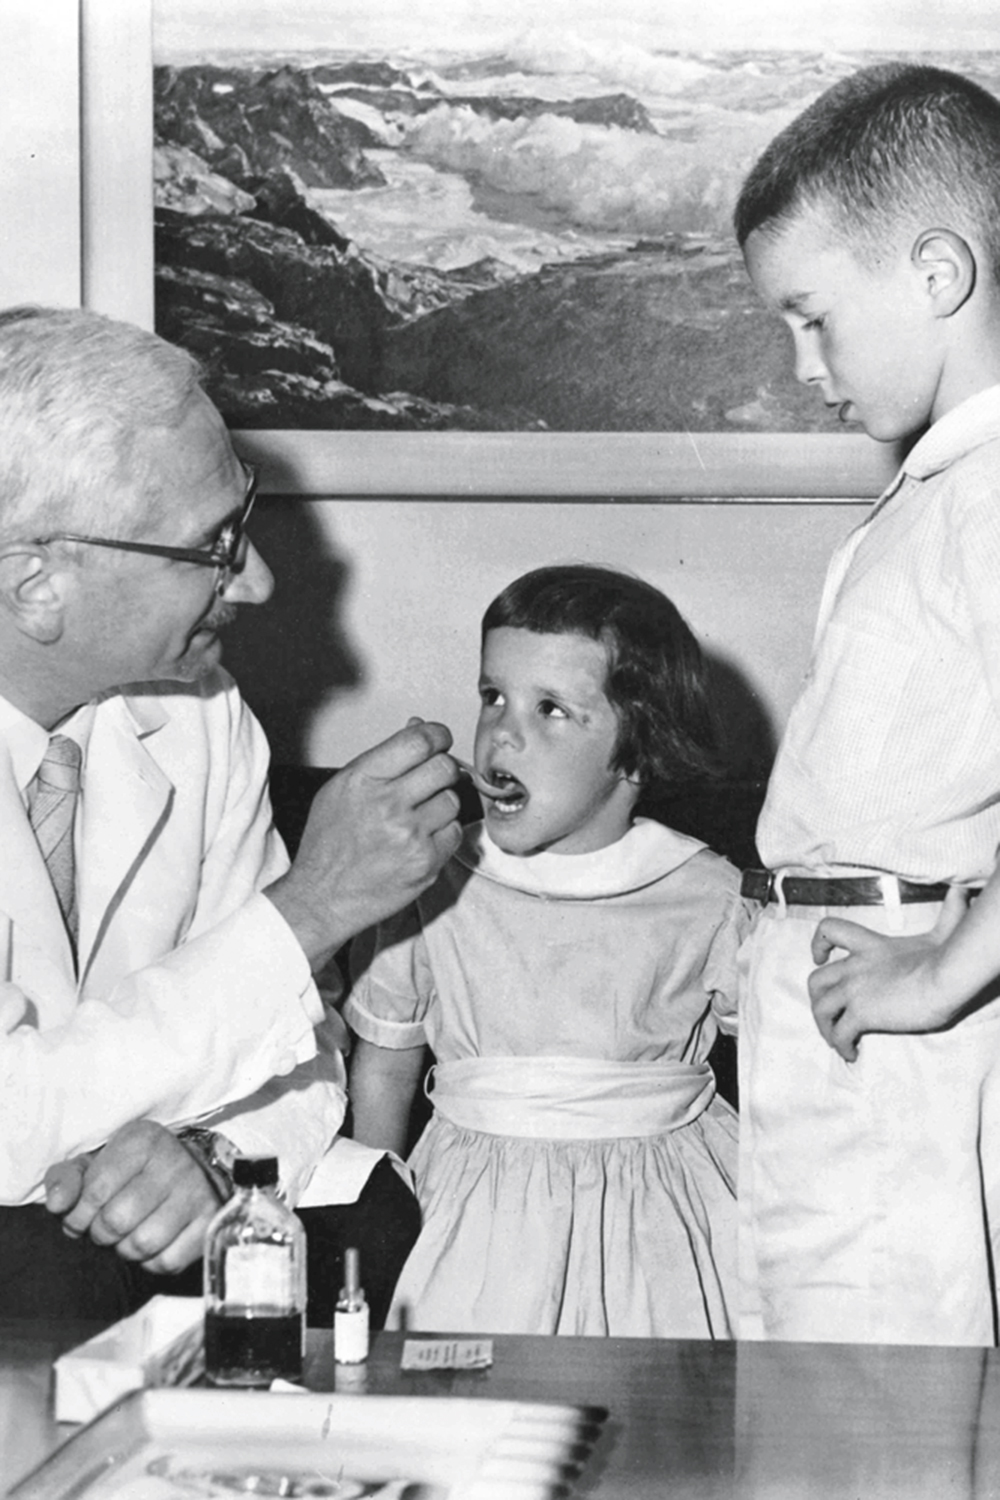 QUASE ERRADICADA - O pesquisador polonês Albert Sabin desenvolveu, em 1960, a vacina contra a poliomielite. O imunizante, feito com o vírus vivo, tornou-se rapidamente a única vacina contra a pólio utilizada e ajudou o Brasil a erradicar a doença em 1994. Apesar dos esforços de Sabin, da OMS e da ciência, a pólio ainda não foi erradicada no mundo -